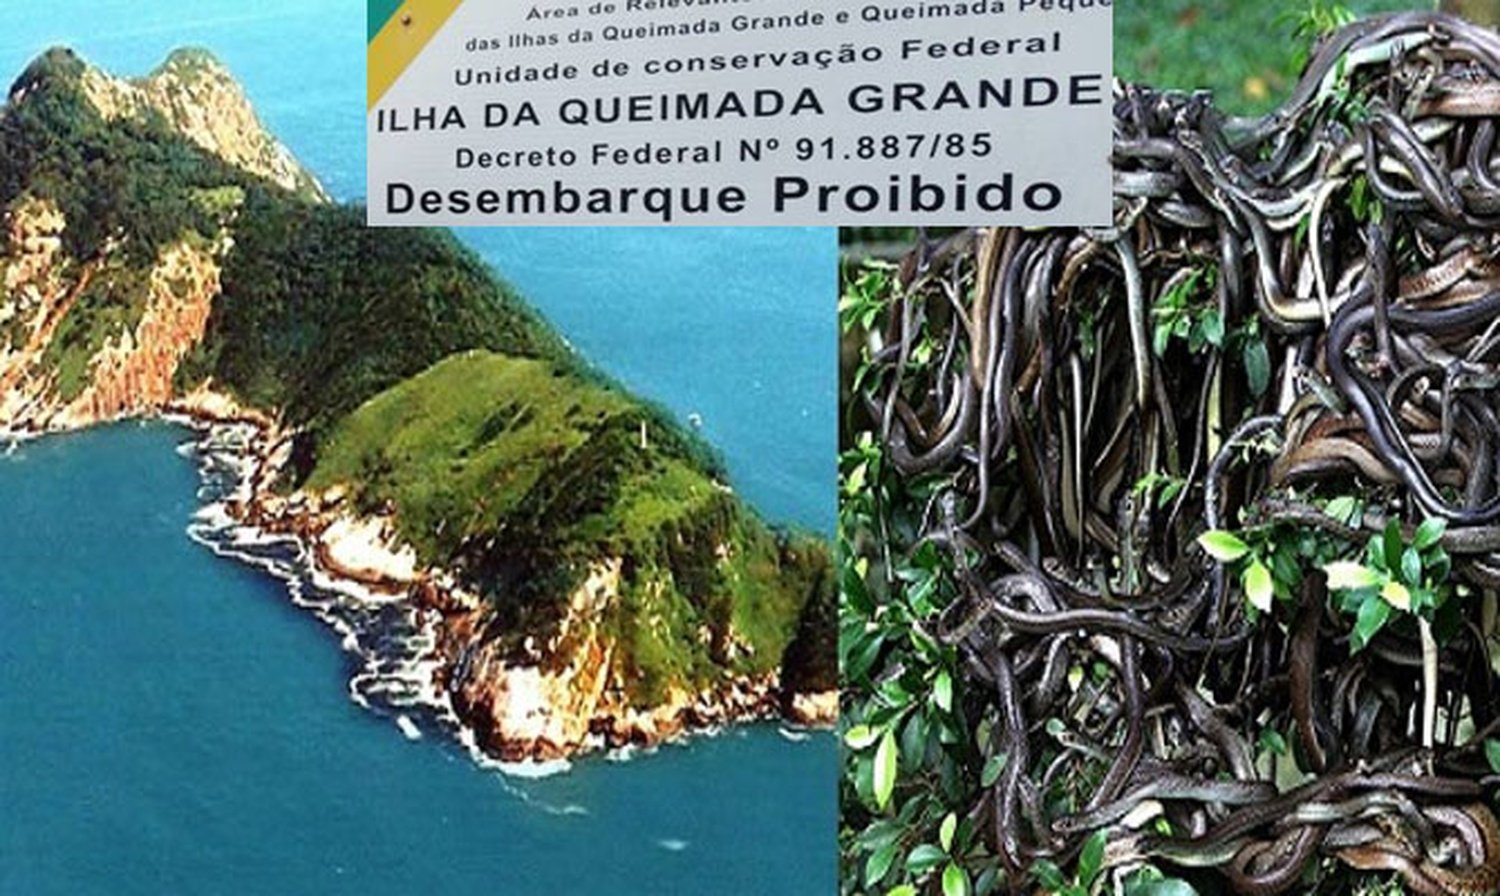 Остров змей фото. Остров Кеймада-Гранди Бразилия. Остров Кеймада-Гранди змеи. Маяк на острове Кеймада-Гранди Бразилия. Змеиный остров, Сан-Паулу, Бразилия.